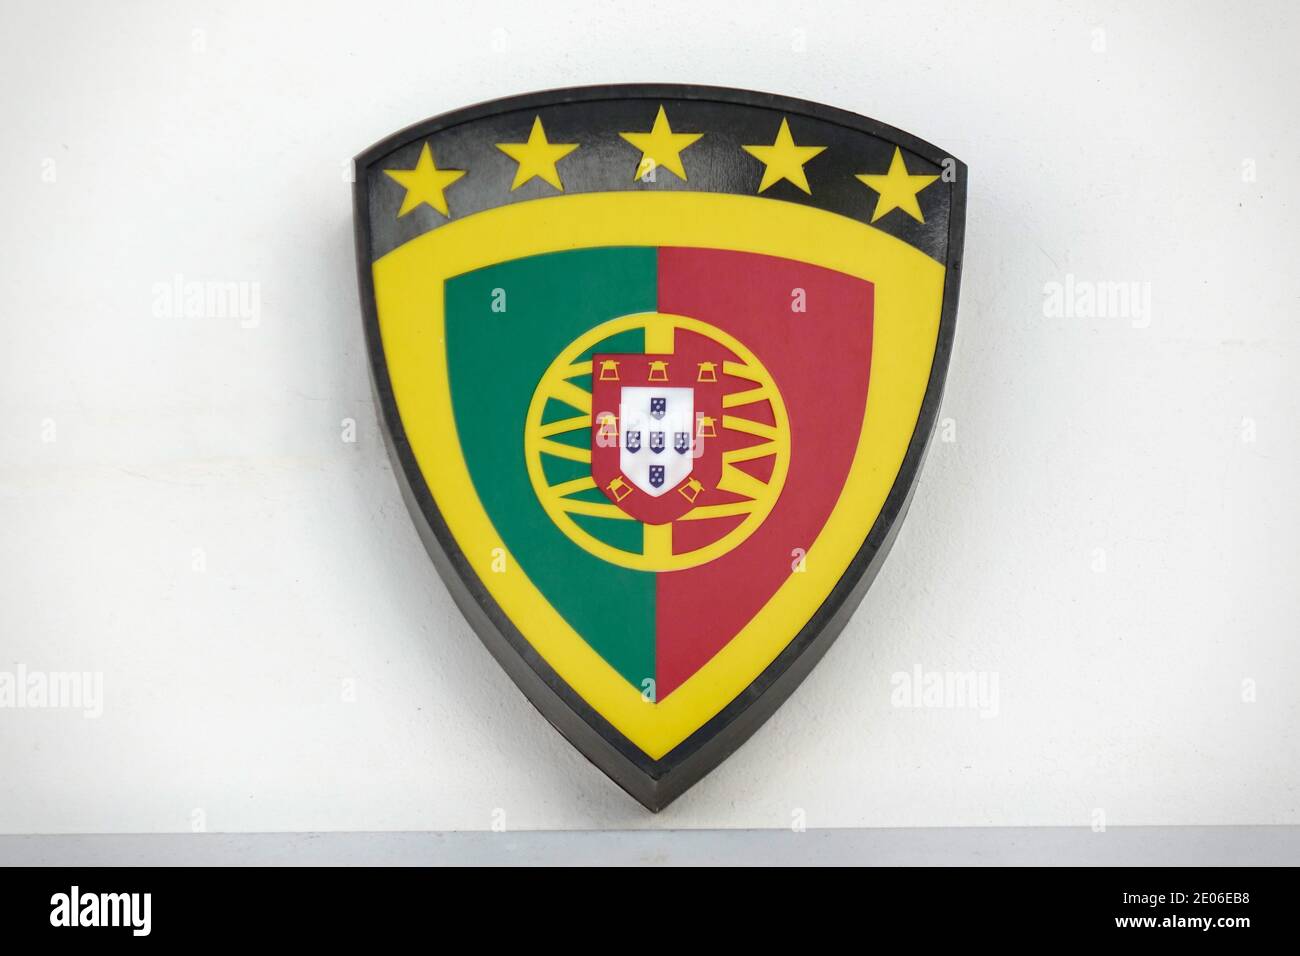 Forca Portugal Sports Shop Logo EIN Sportgeschäft mit vielen Standorte, Die Fußball-Trikots Und General Sports Wear Verkauft Stockfoto